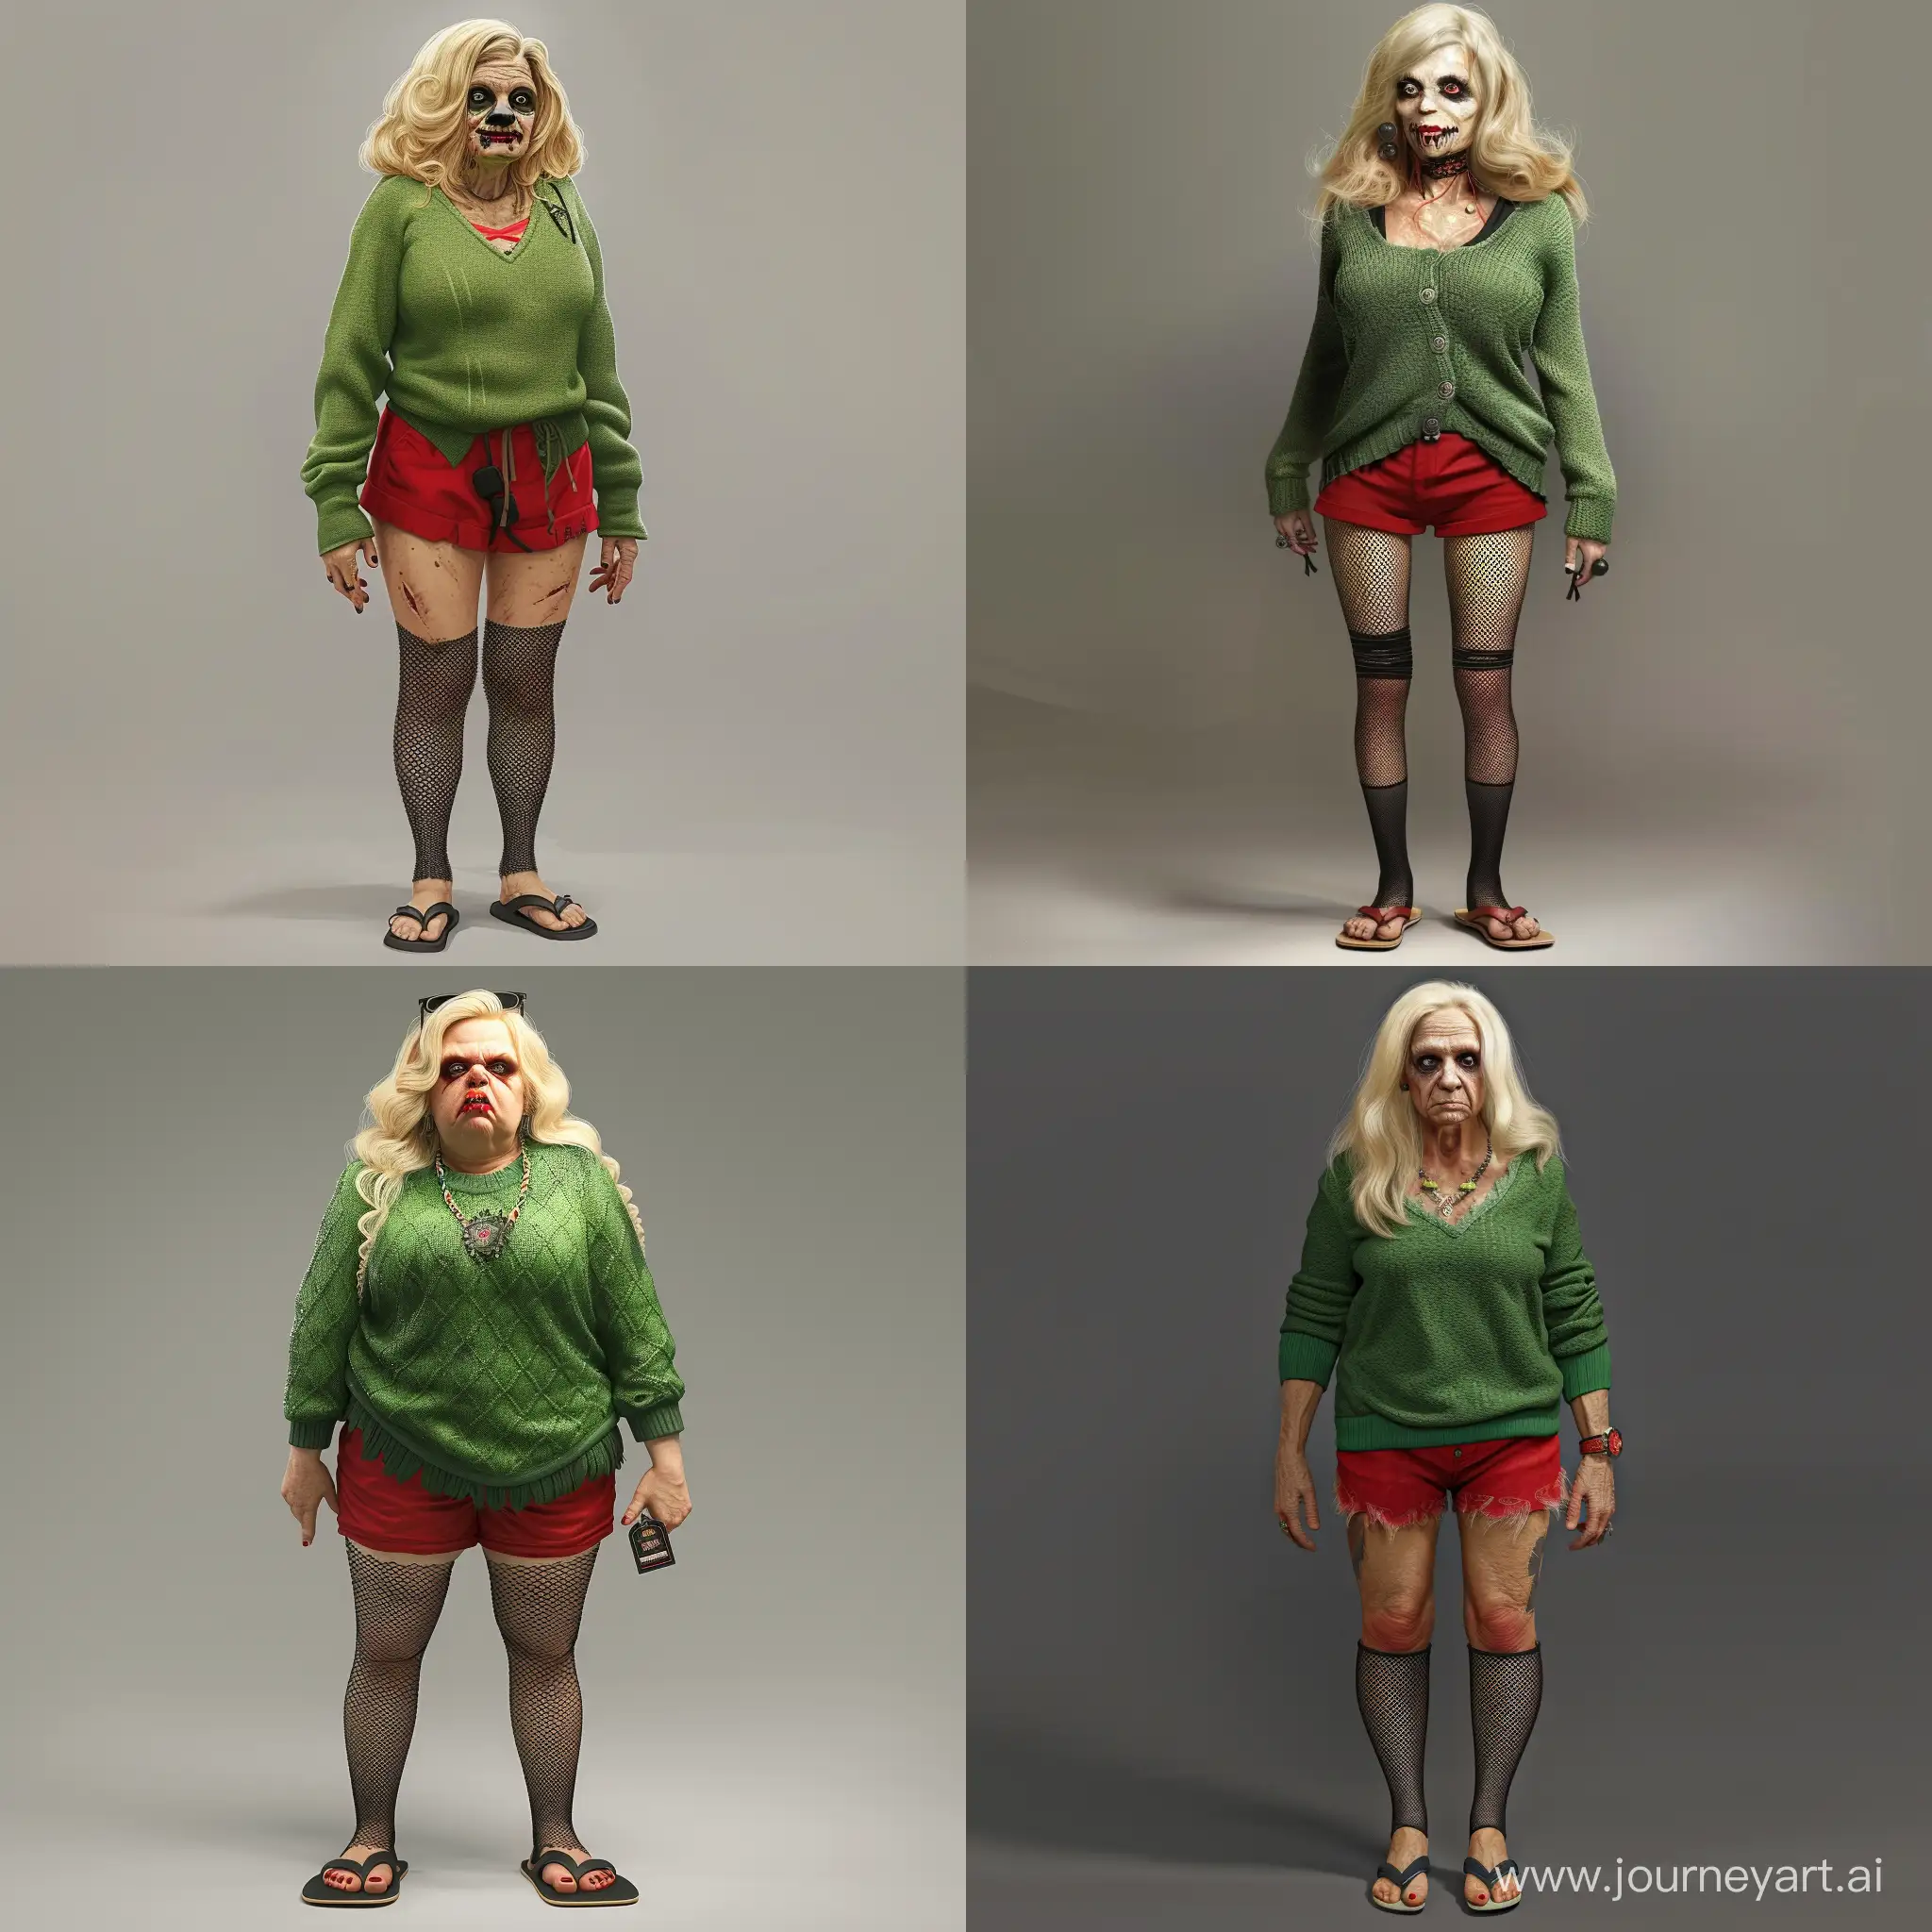 Crea una foto realistica di una donna sui 50 anni, vestita con un maglione verde, pantaloncini rossi, calze a rete nere e scarpe infradito. Un donna prosperosa con capelli biondi, pelle molto chiara e viso da nerd goth